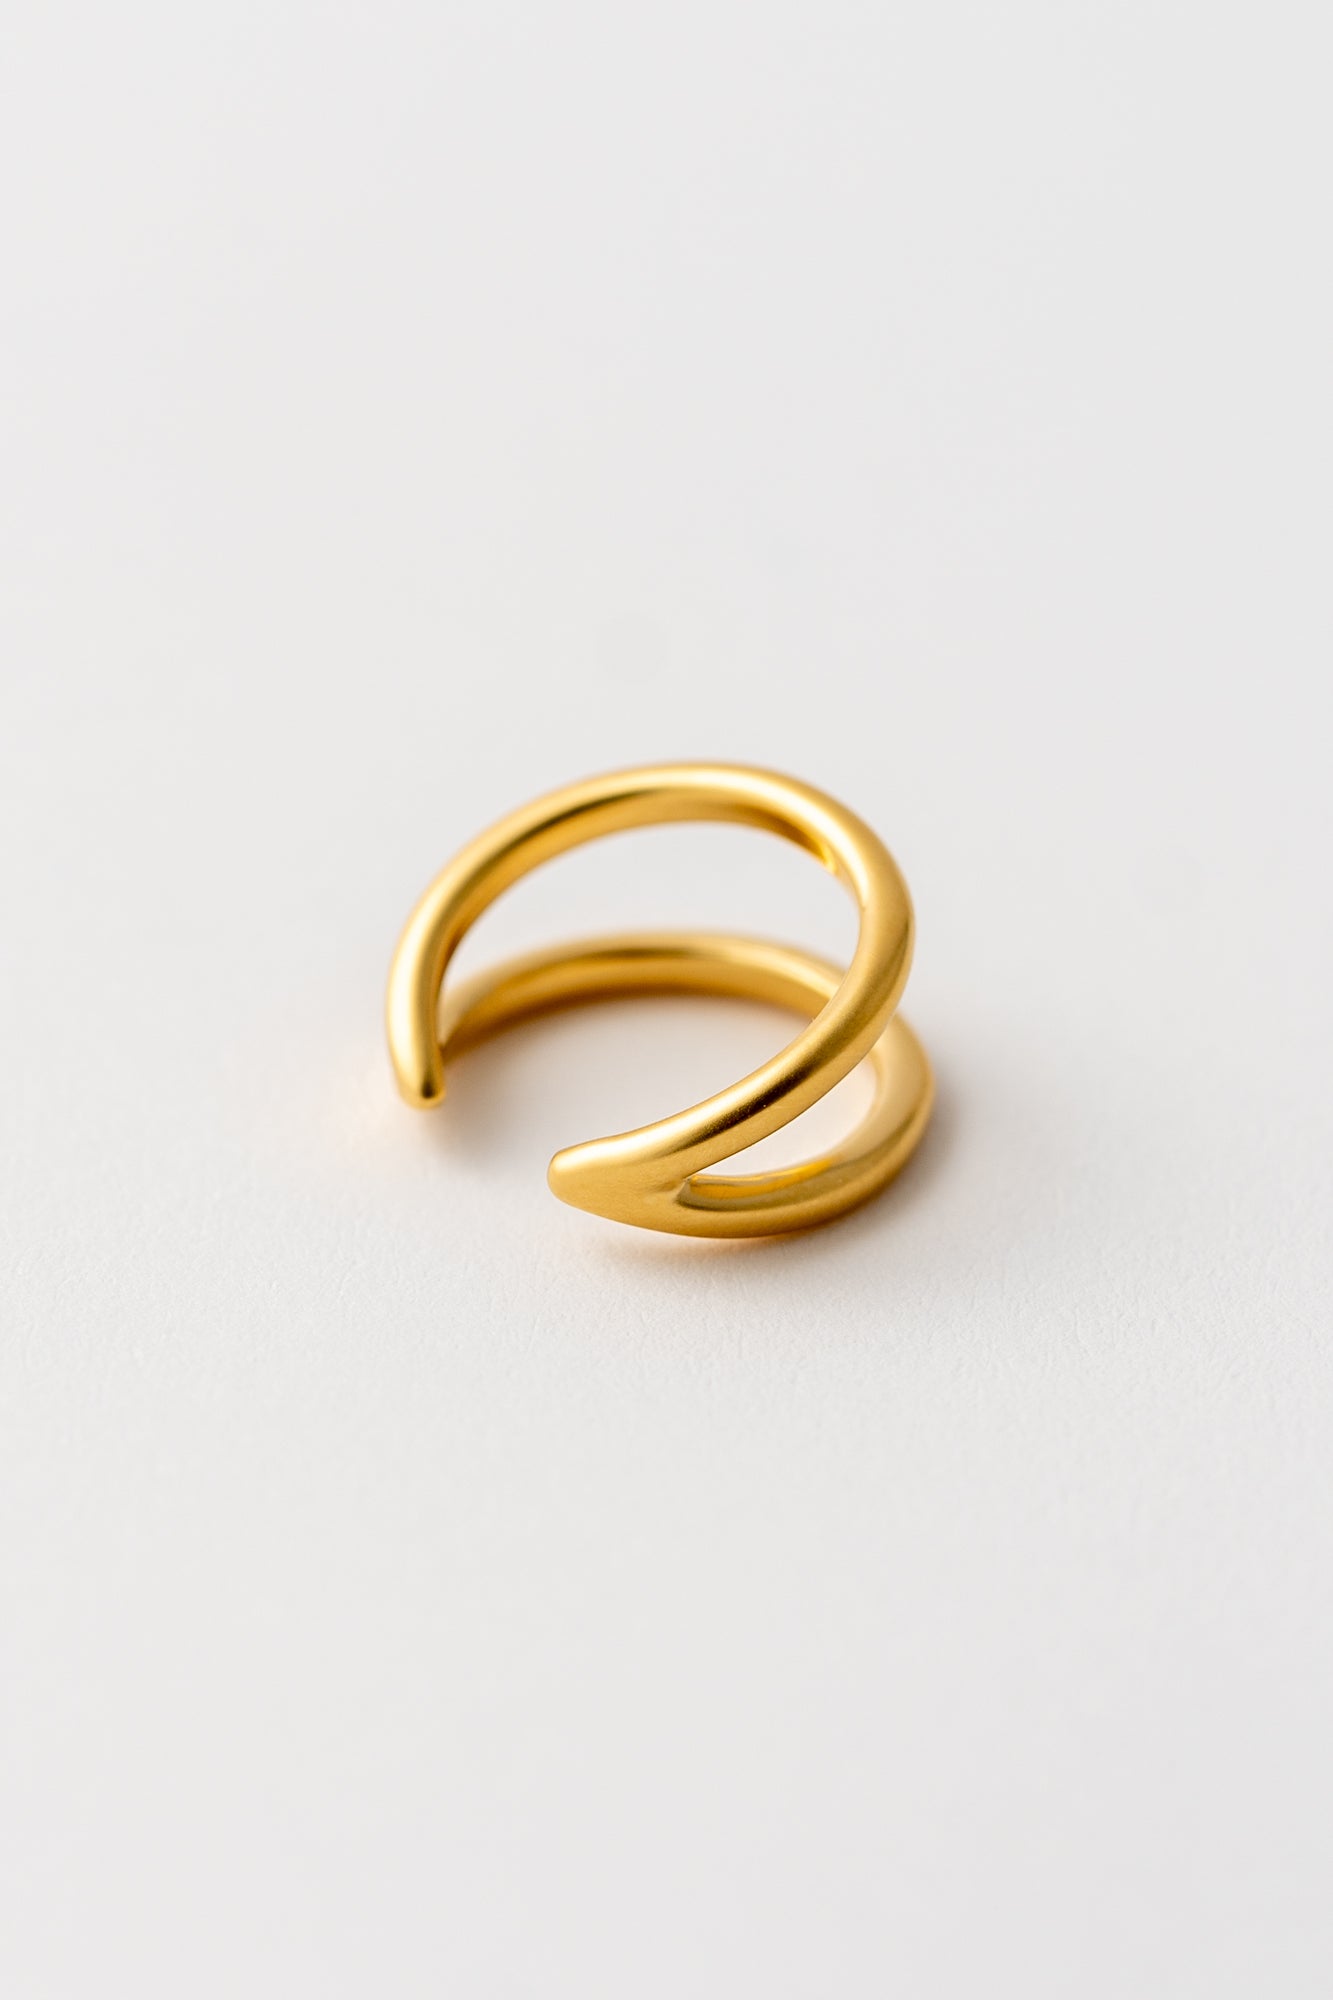 goldener Ring auf weißem Hintergrund